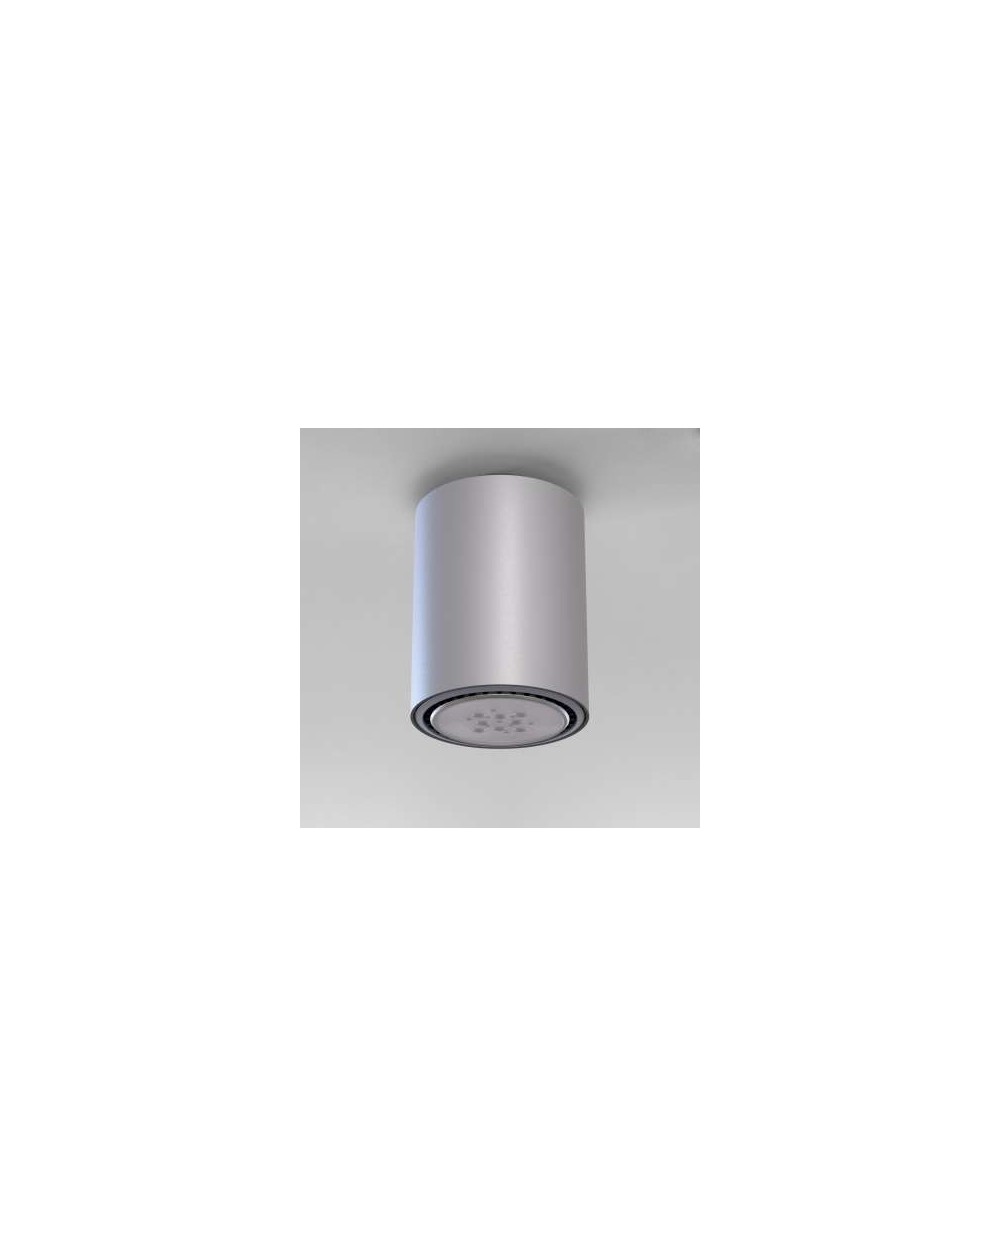 Lampa sufitowa / natynkowa Minimal - wersja E3 NT 1 x 60W - Cleoni okrągła tuba kolor aluminium czarny lub biały